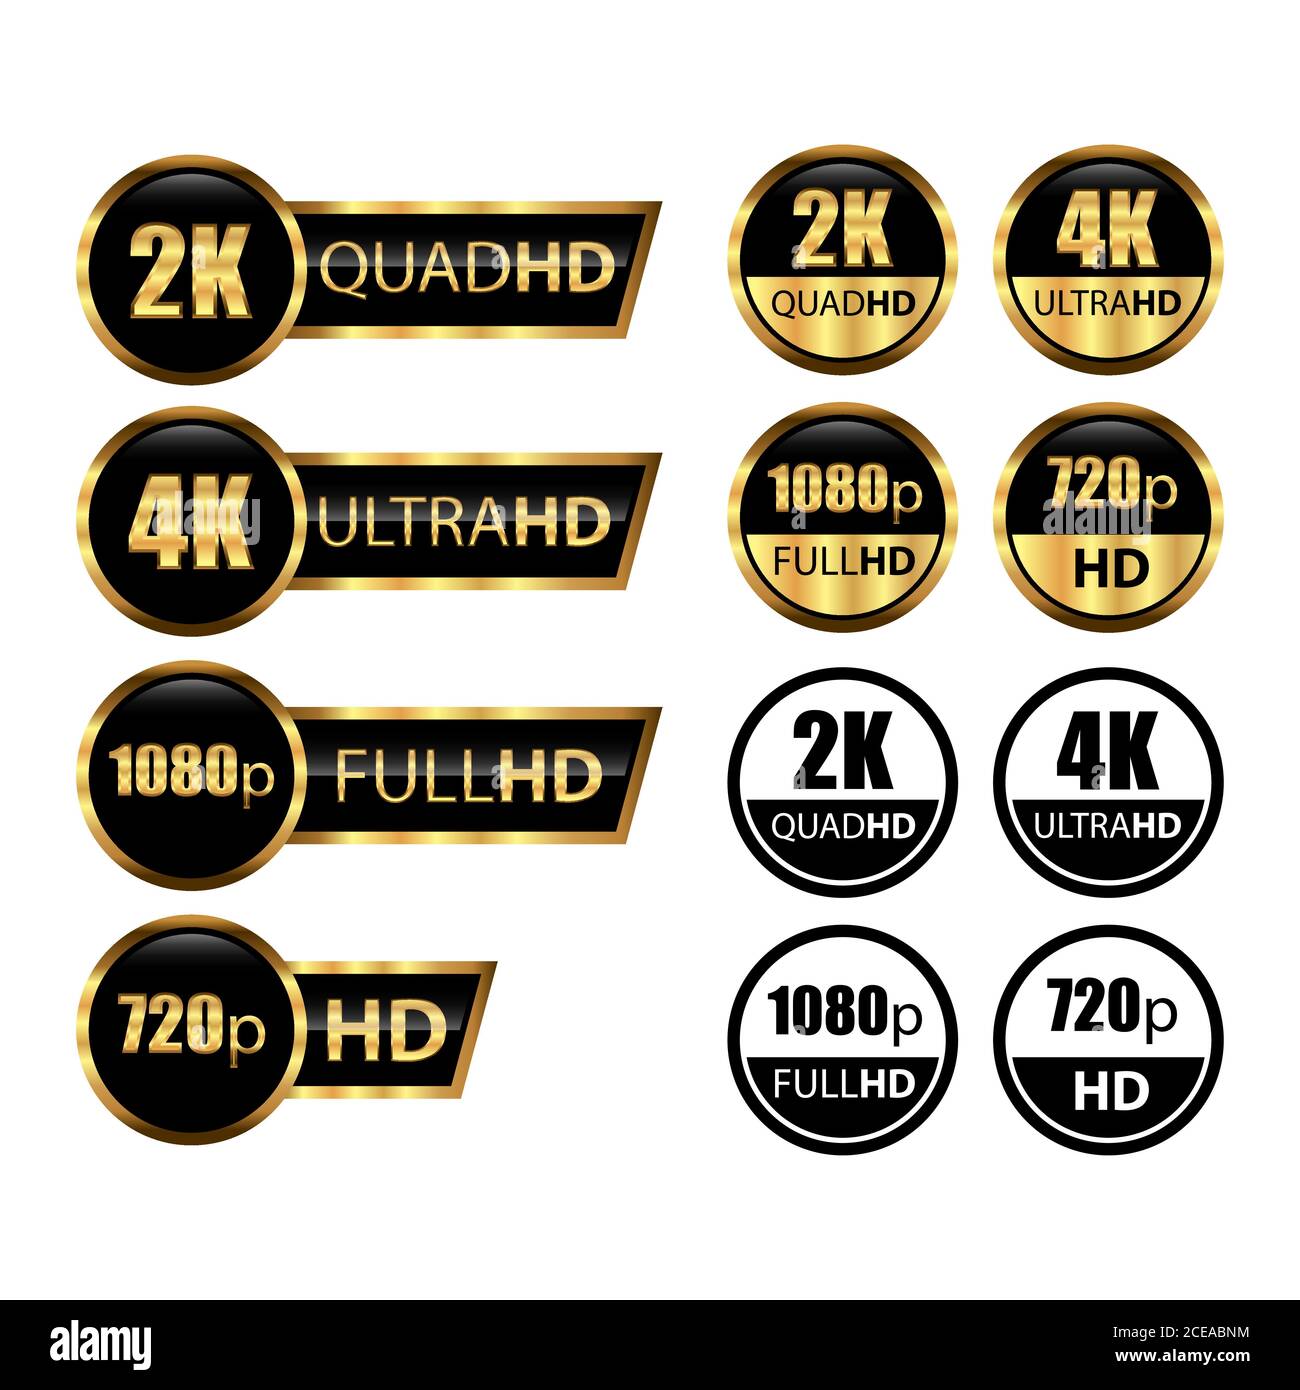 4k ultrahd, 2K quadhd, 1080 fullhd, 720 hd-Abmessungen des Videos, Logo für Videoauflösung. Anzeigebezeichnung des TV-/Spielbildschirms. High Definition-Tags Stock Vektor